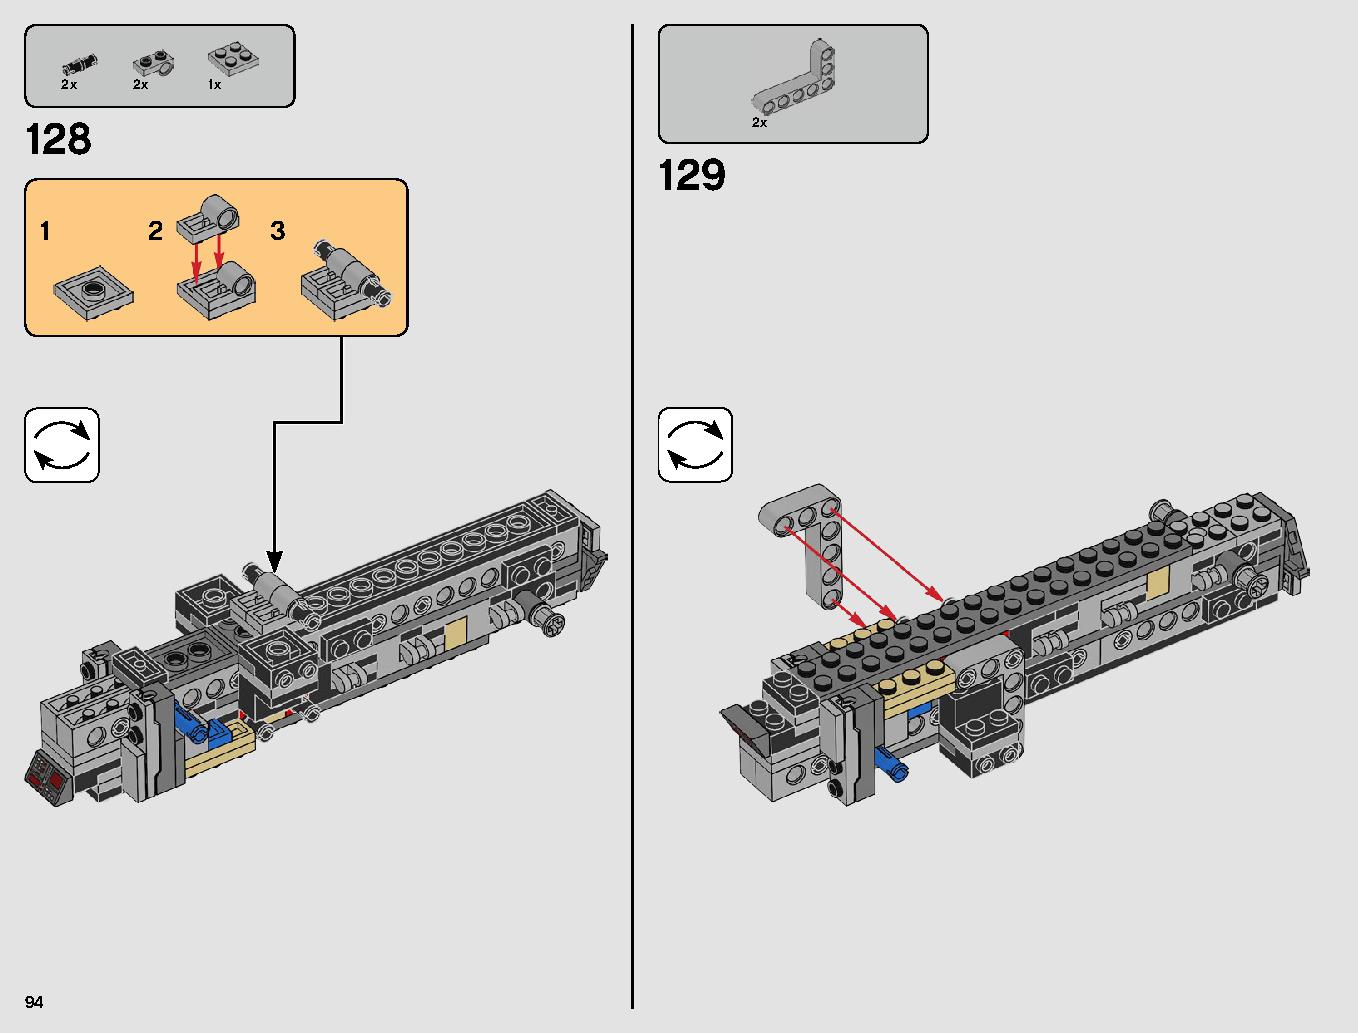 スレーヴl™ – 20周年記念モデル 75243 レゴの商品情報 レゴの説明書・組立方法 94 page